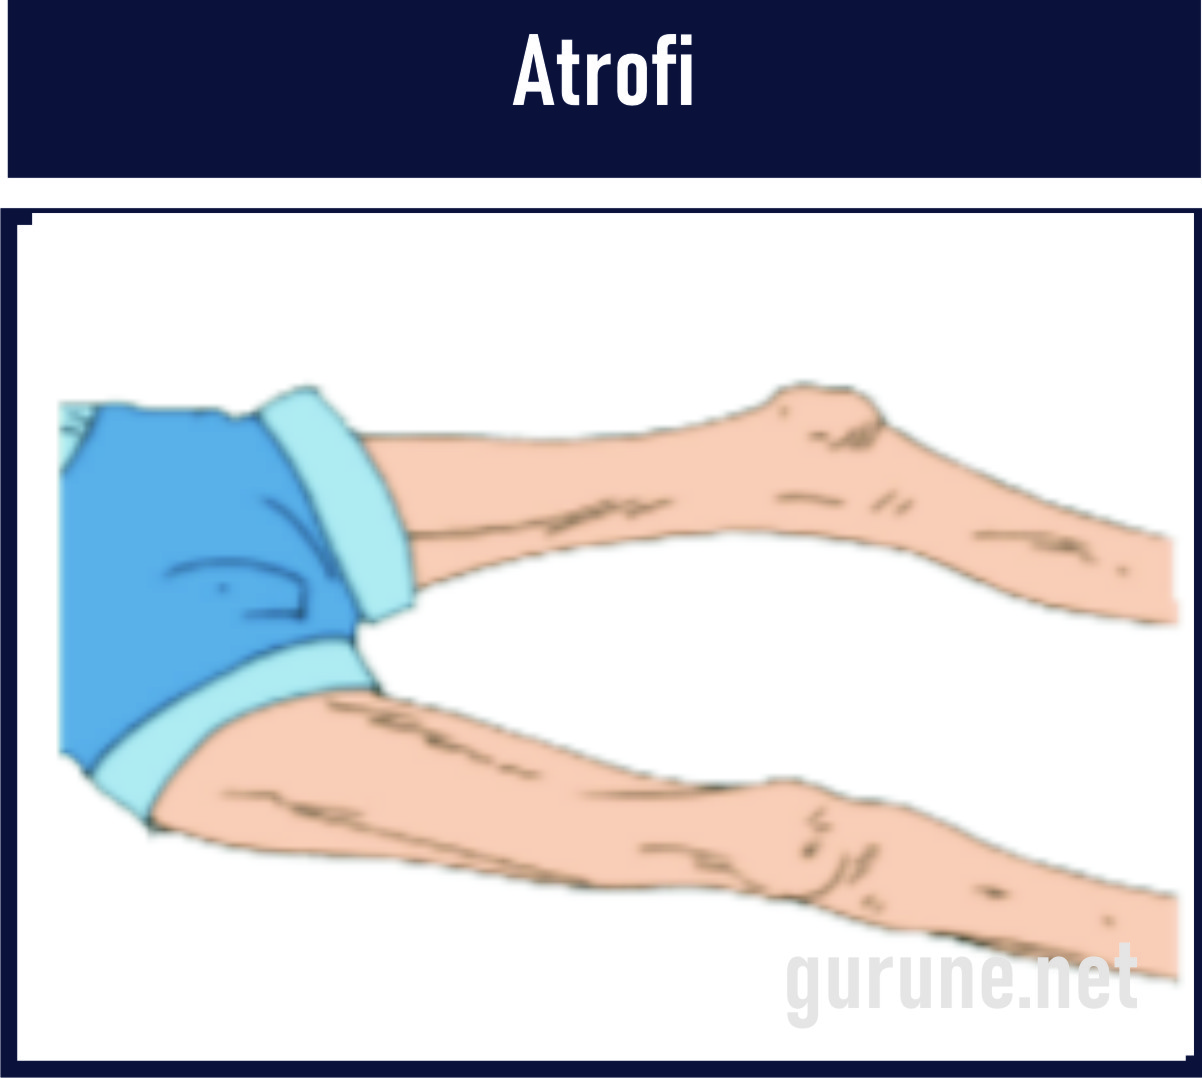 Artrofi adalah Kelainan otot yang mengecil, lemah, fungsi otot yang menurun. Hal ini disebabkan adanya penyakit polimielitis yang dapat merusakkan sel saraf pada otot.